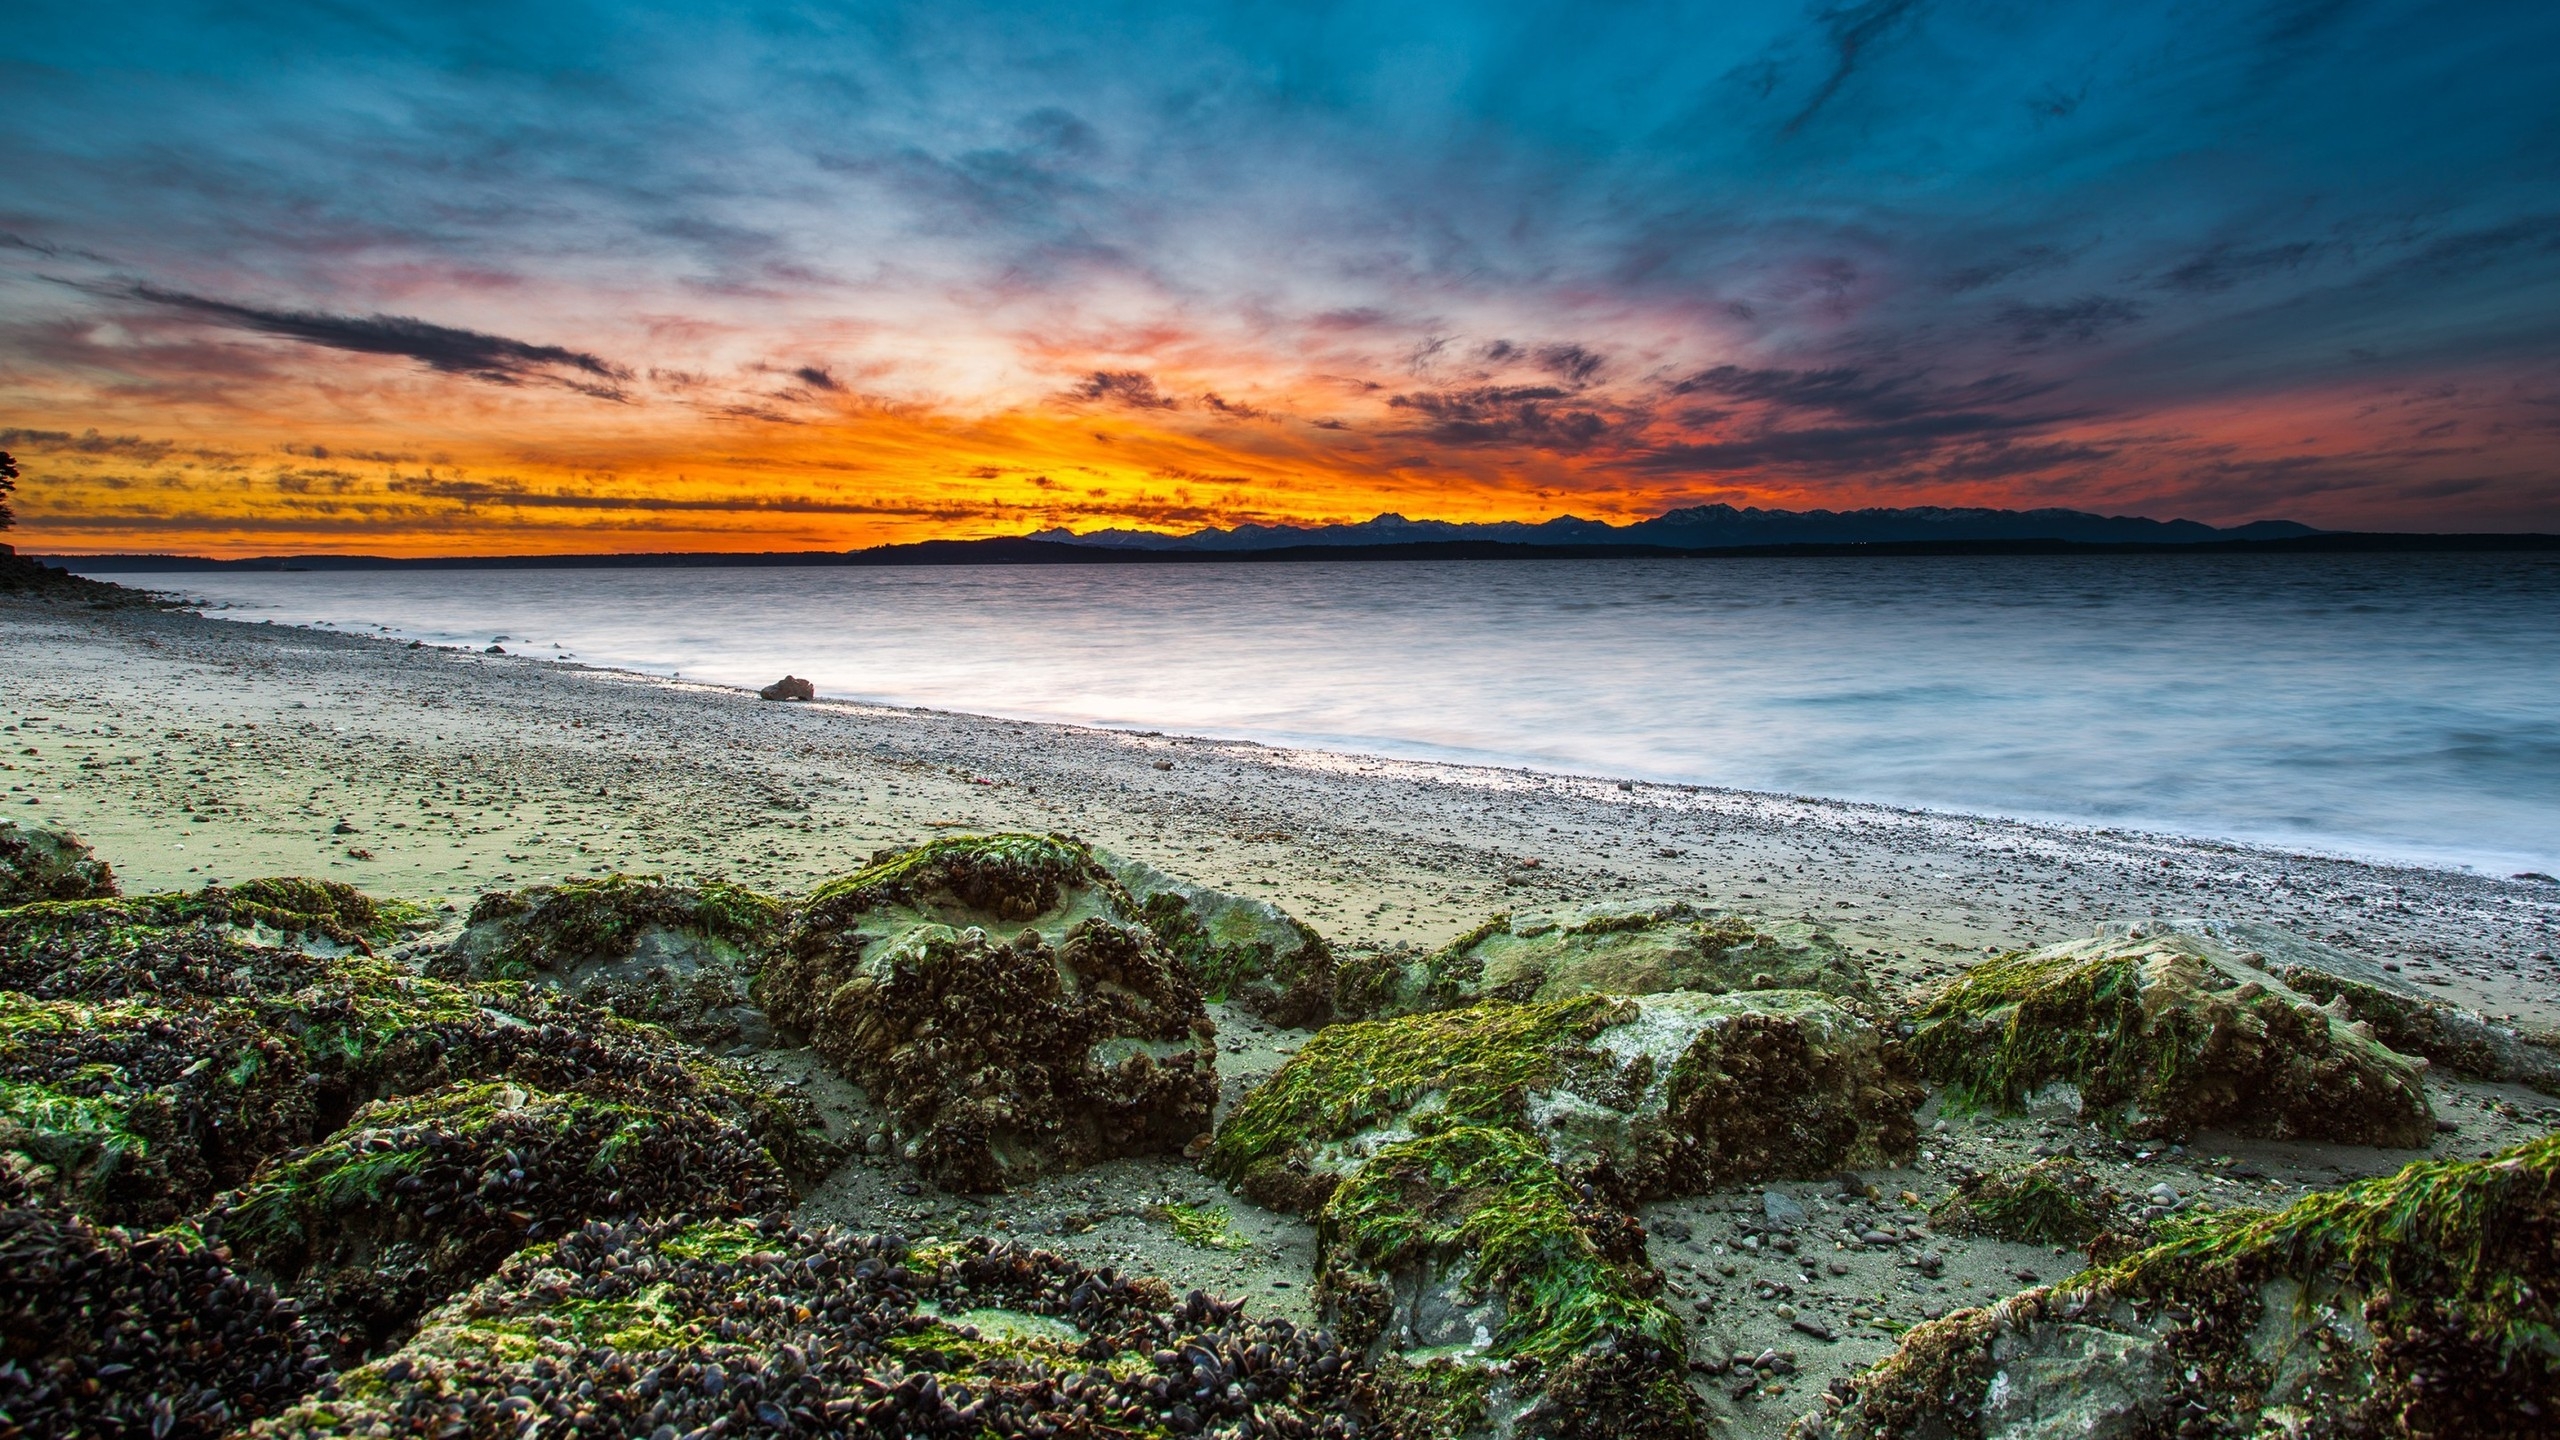 Virgin Beach Sunset for 2560x1440 HDTV resolution